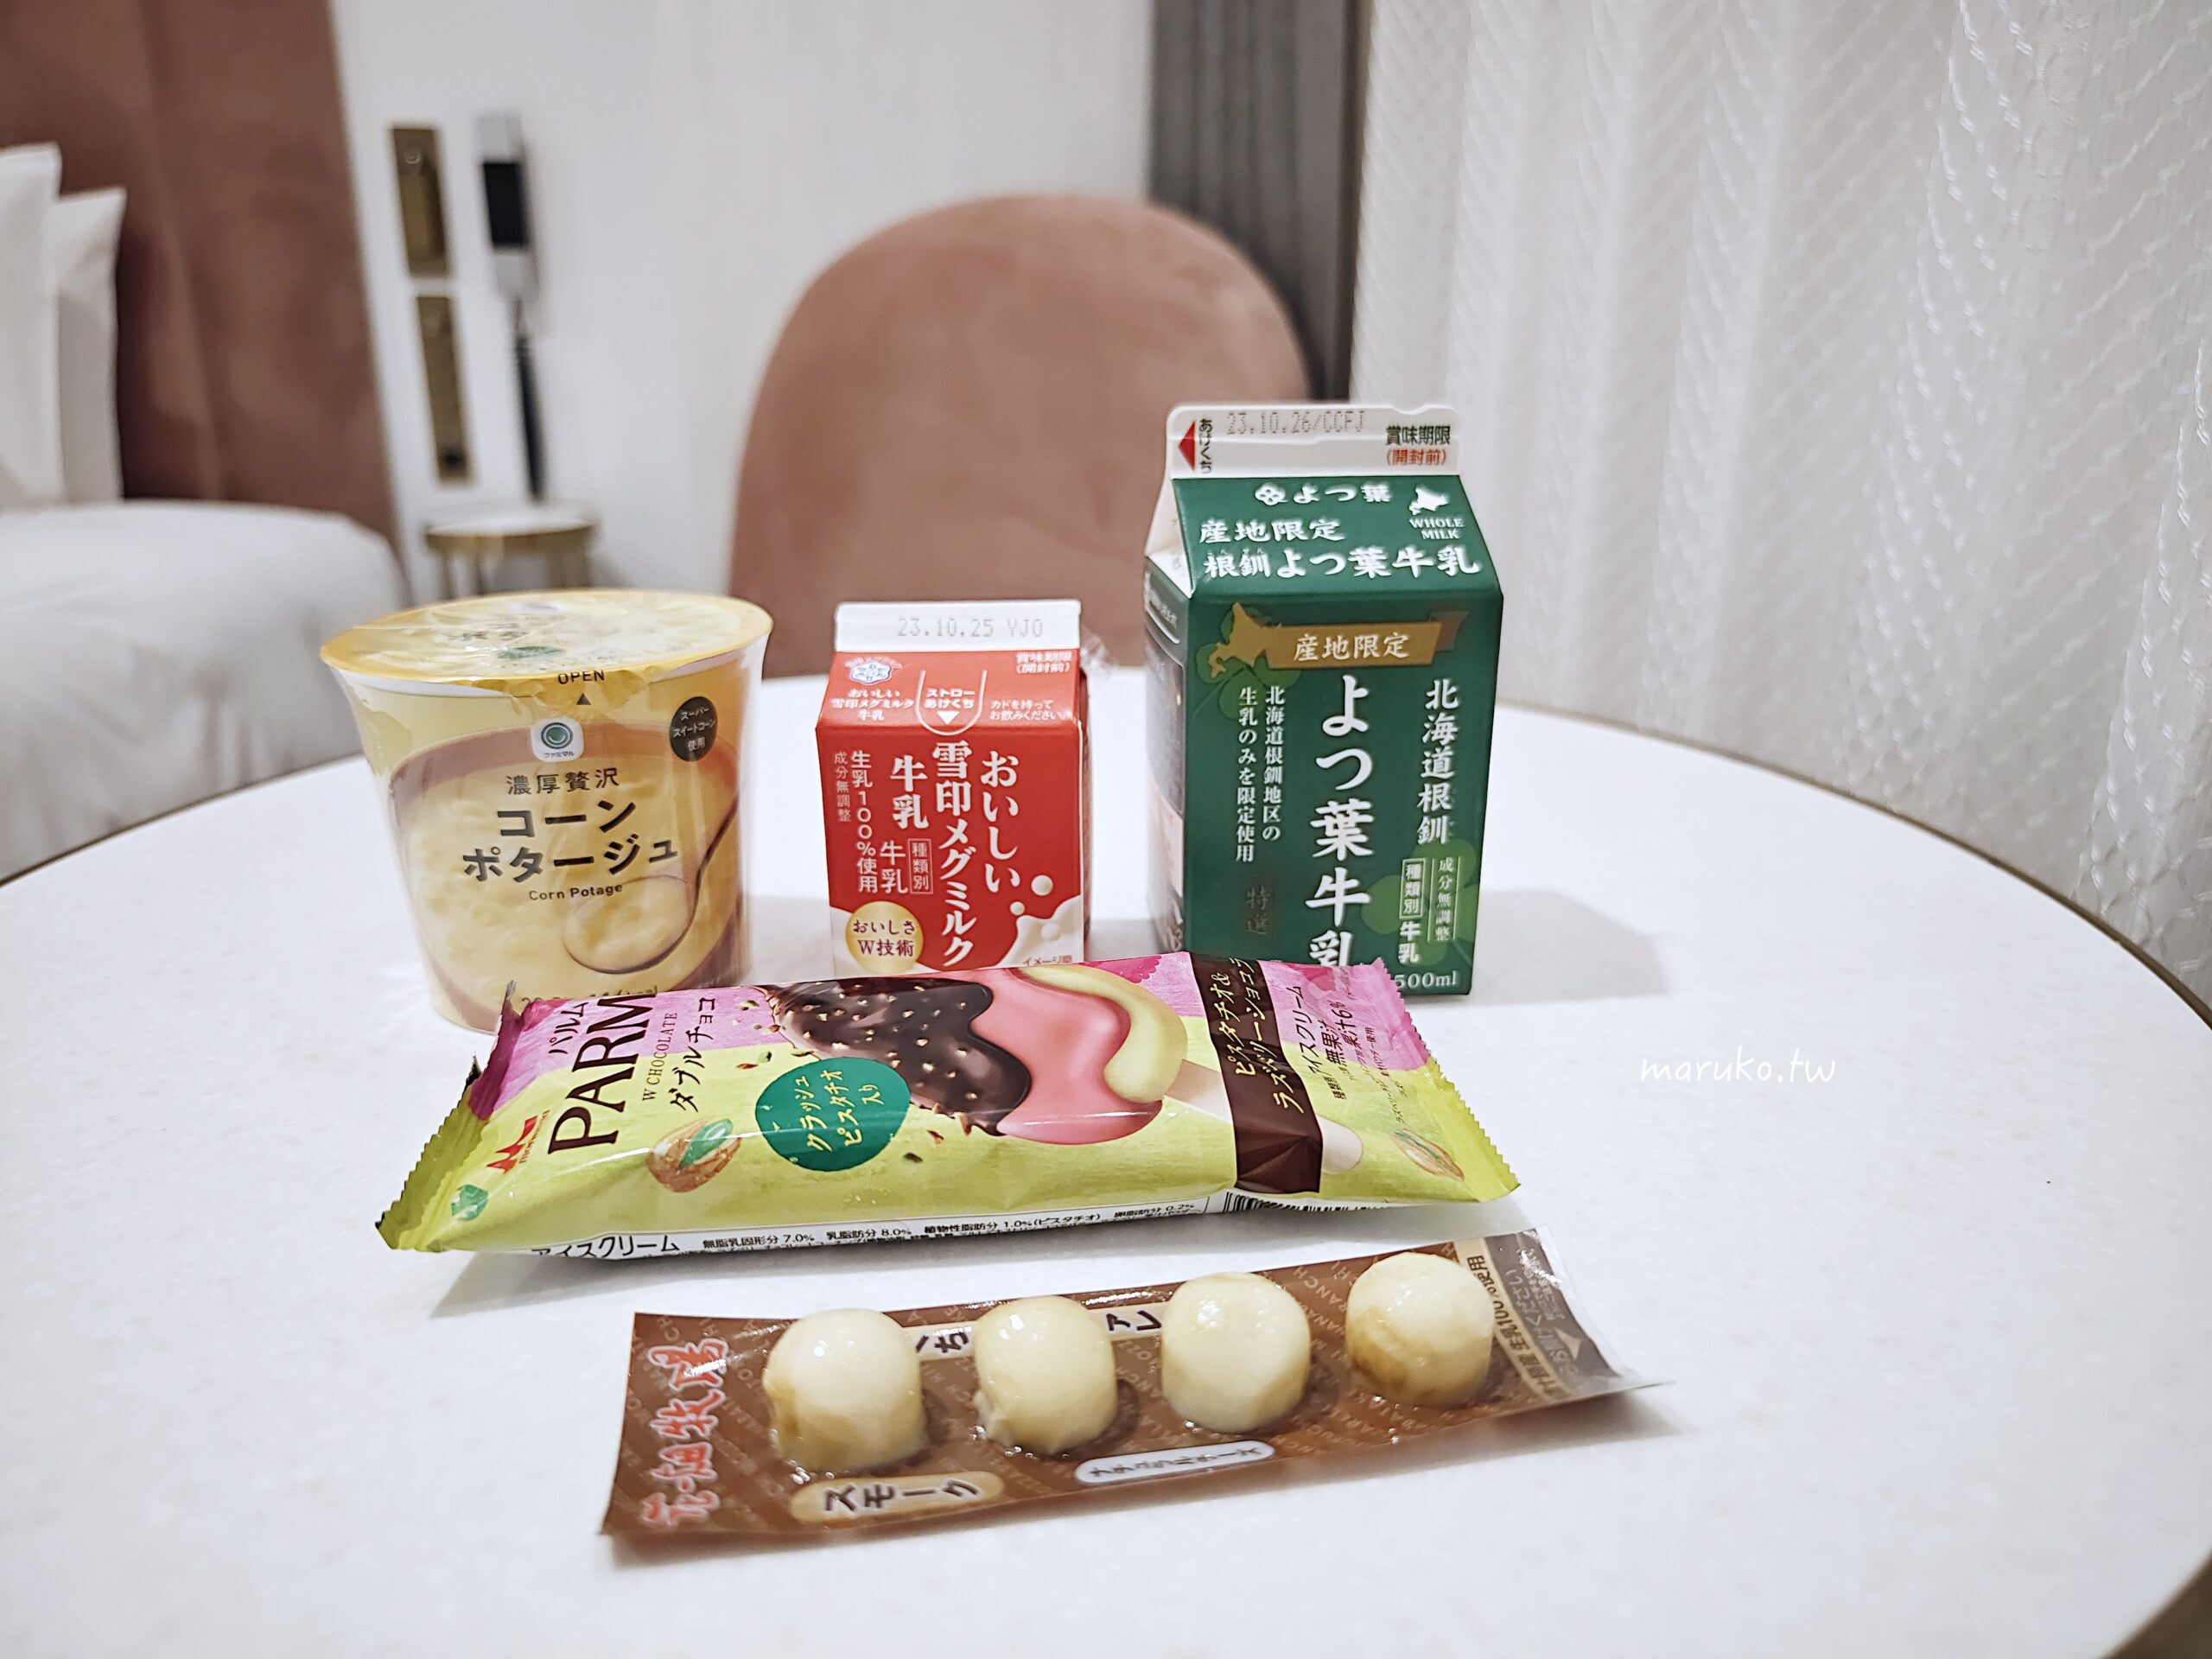 【札幌超市】まいばすけっと (My Basket) AEON 旗下都市型小型超市，便利商店式超市推薦！ @Maruko與美食有個約會